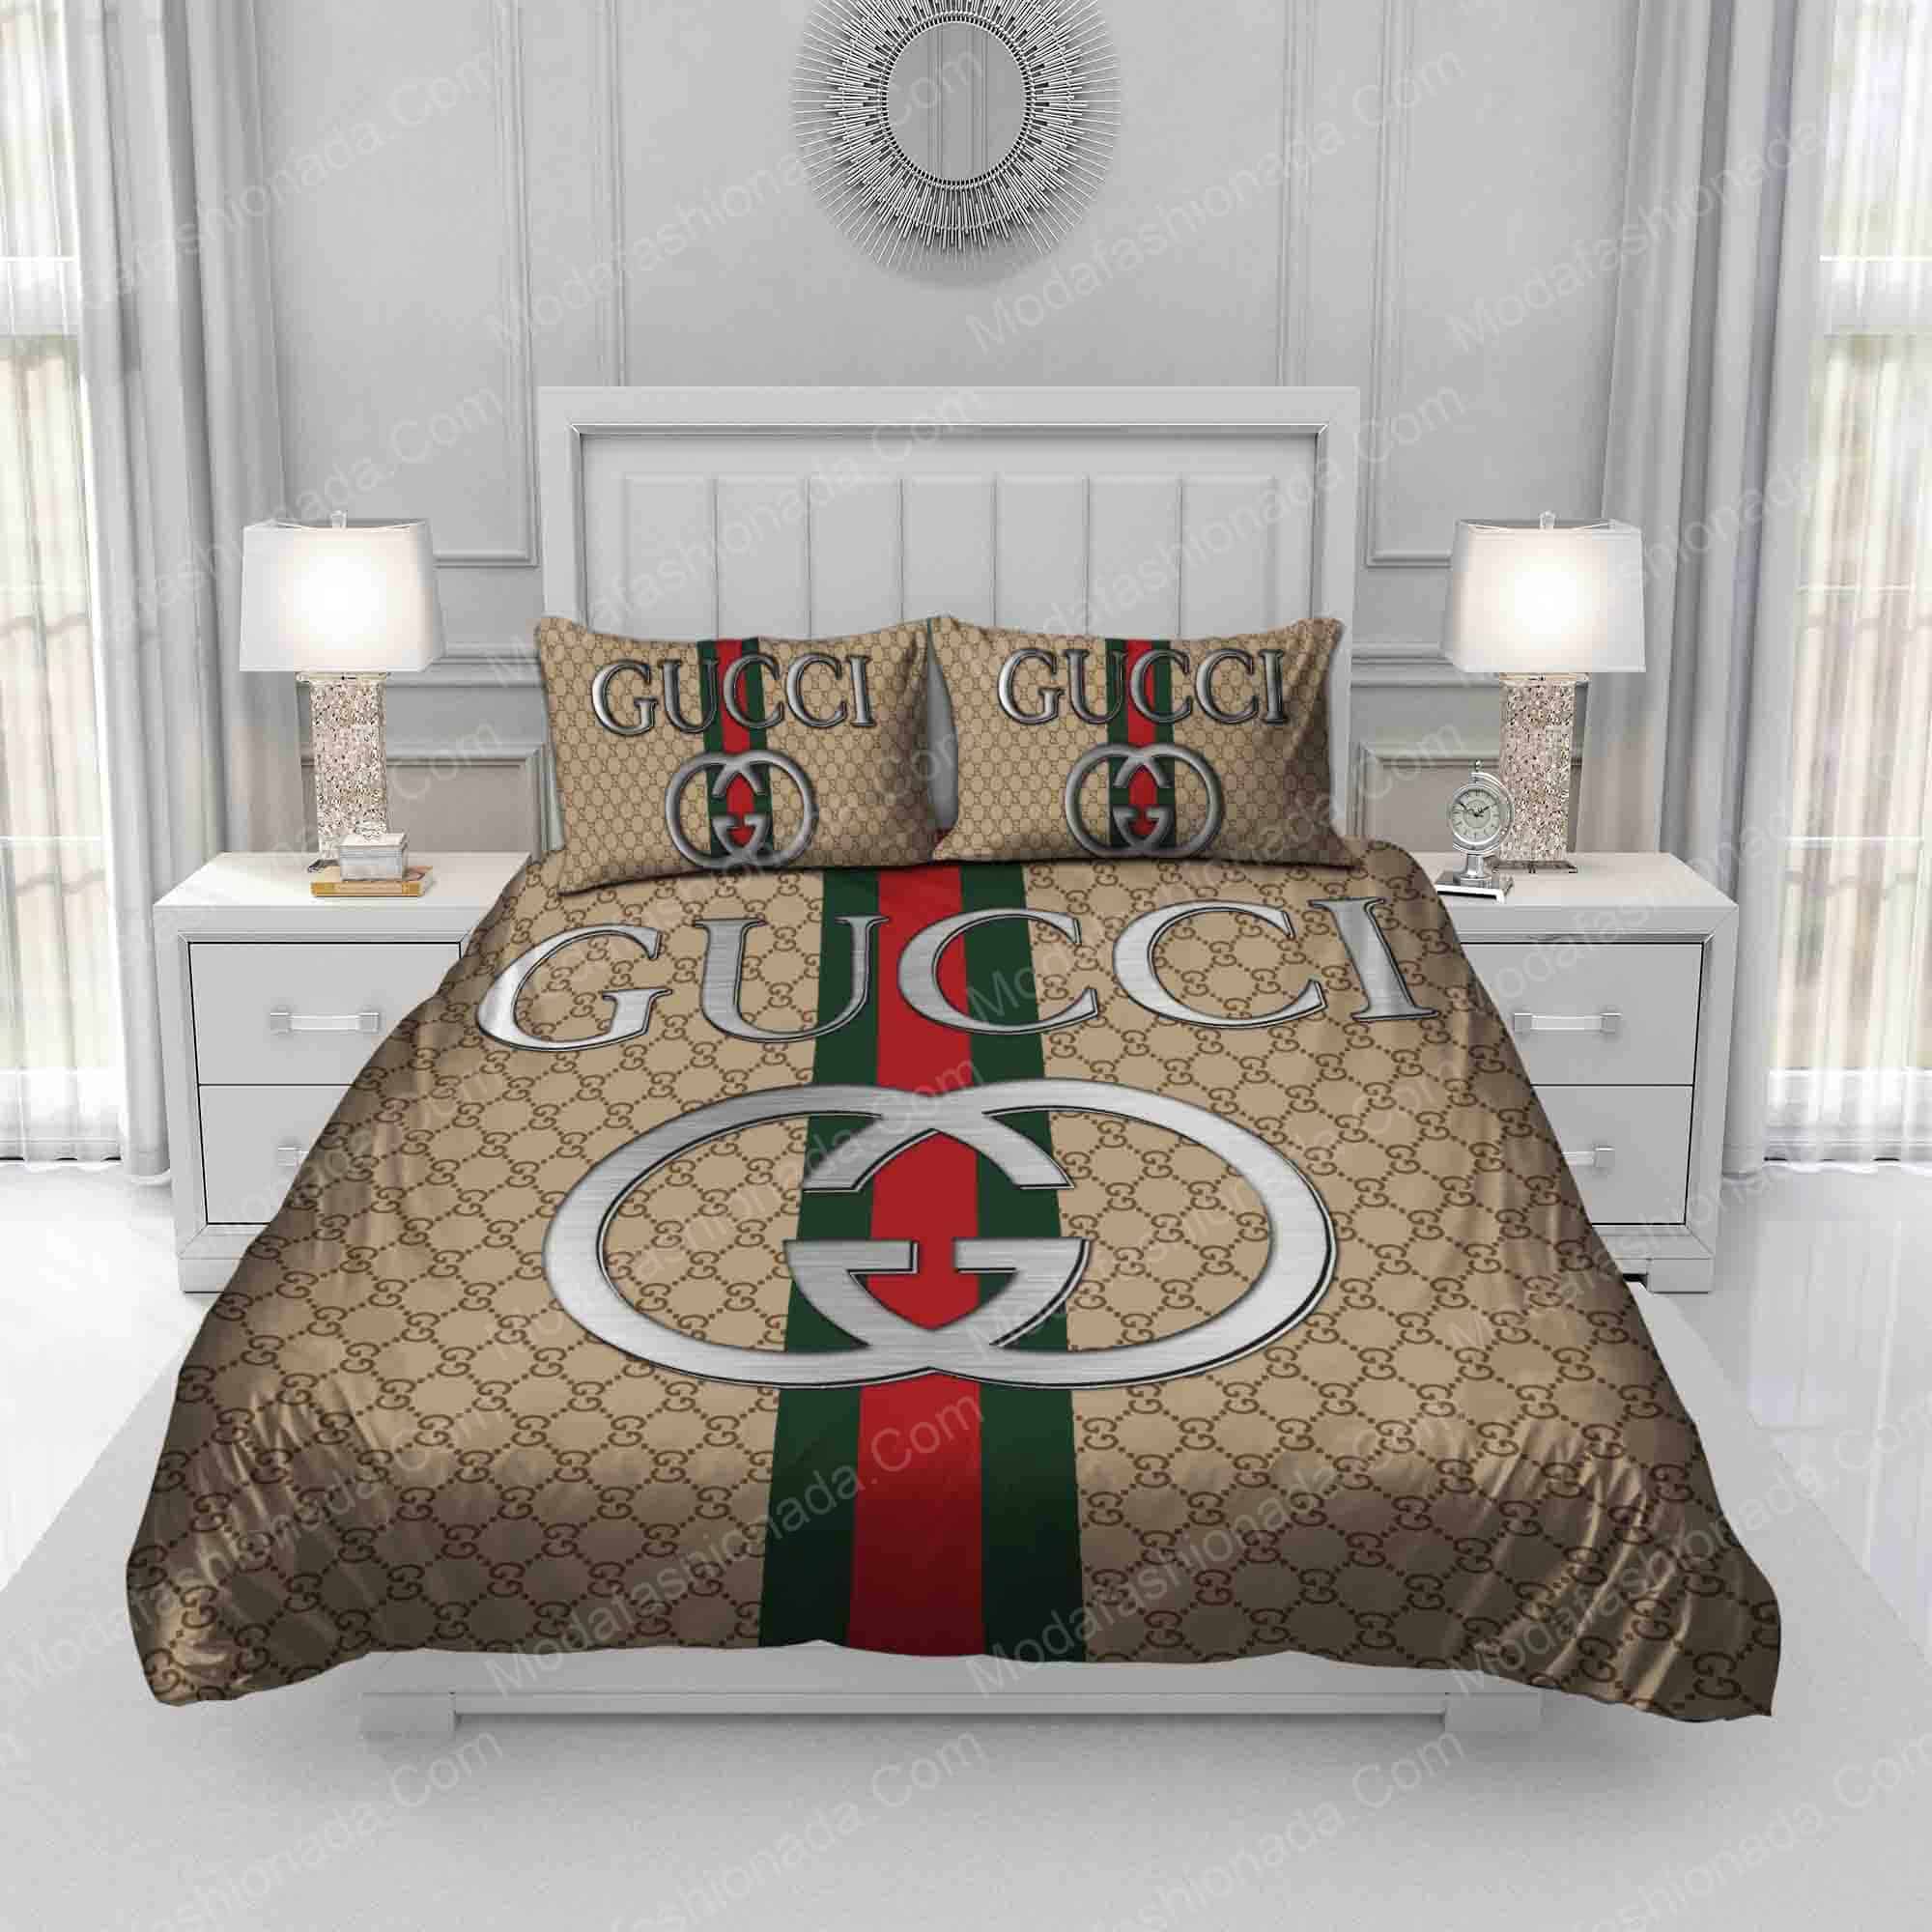 Buy Gucci Bedding Sets Bed Sets, Bedroom Sets, Comforter Sets, Duvet Cover,  Bedspread